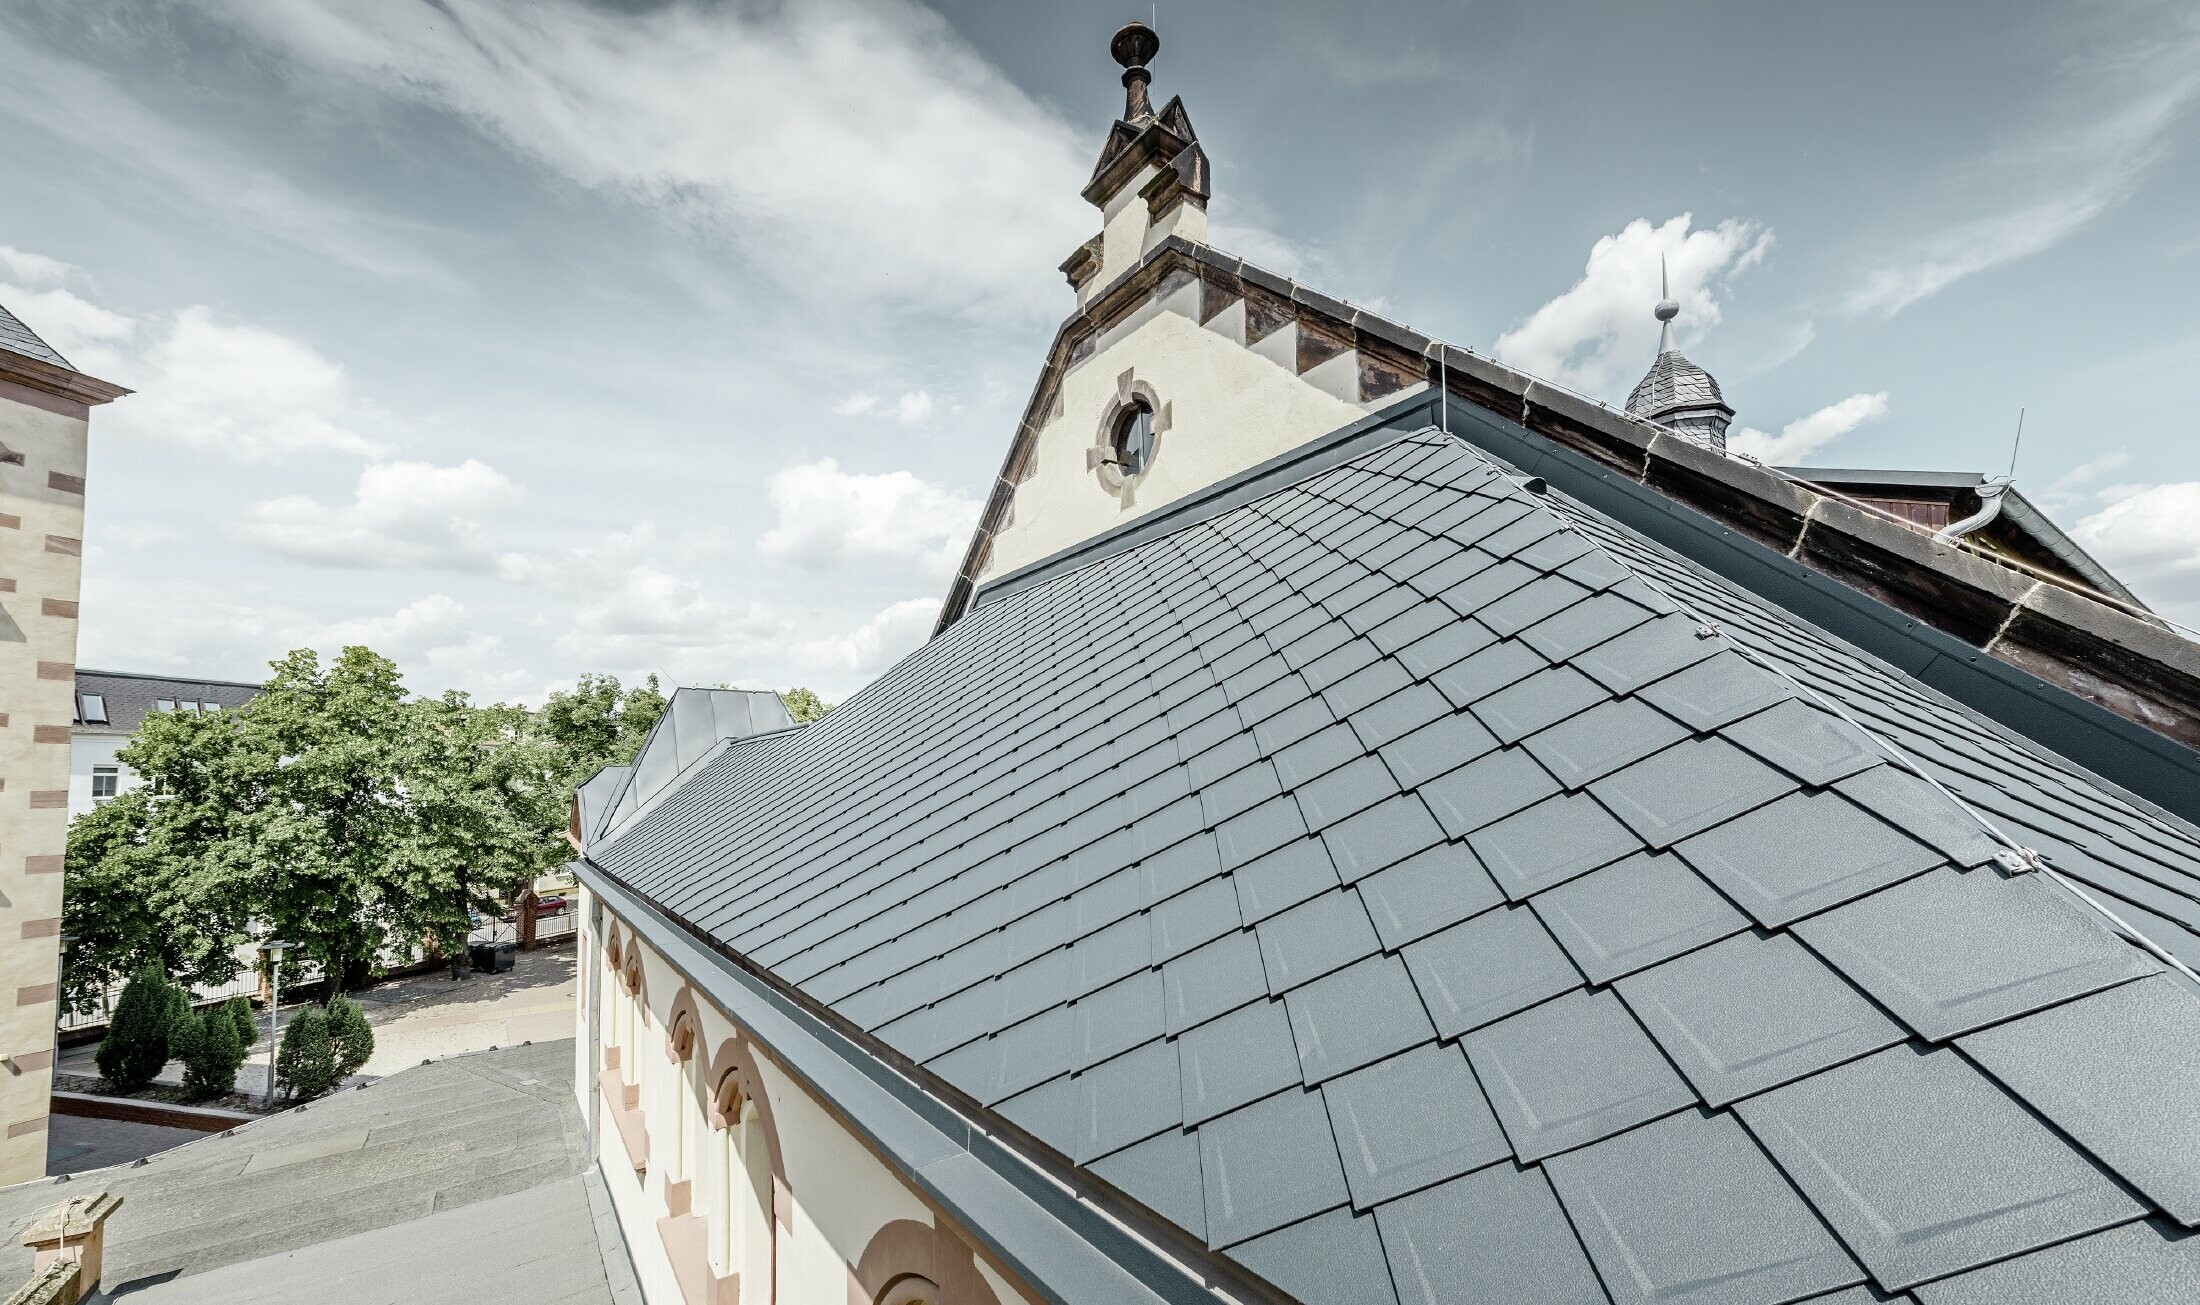 Salle de sport fraîchement rénovée de l’école de Lutherstadt Wittenberg — Toiture en aluminium PREFA réalisée avec des losanges de toiture et bandes Prefalz de couleur anthracite